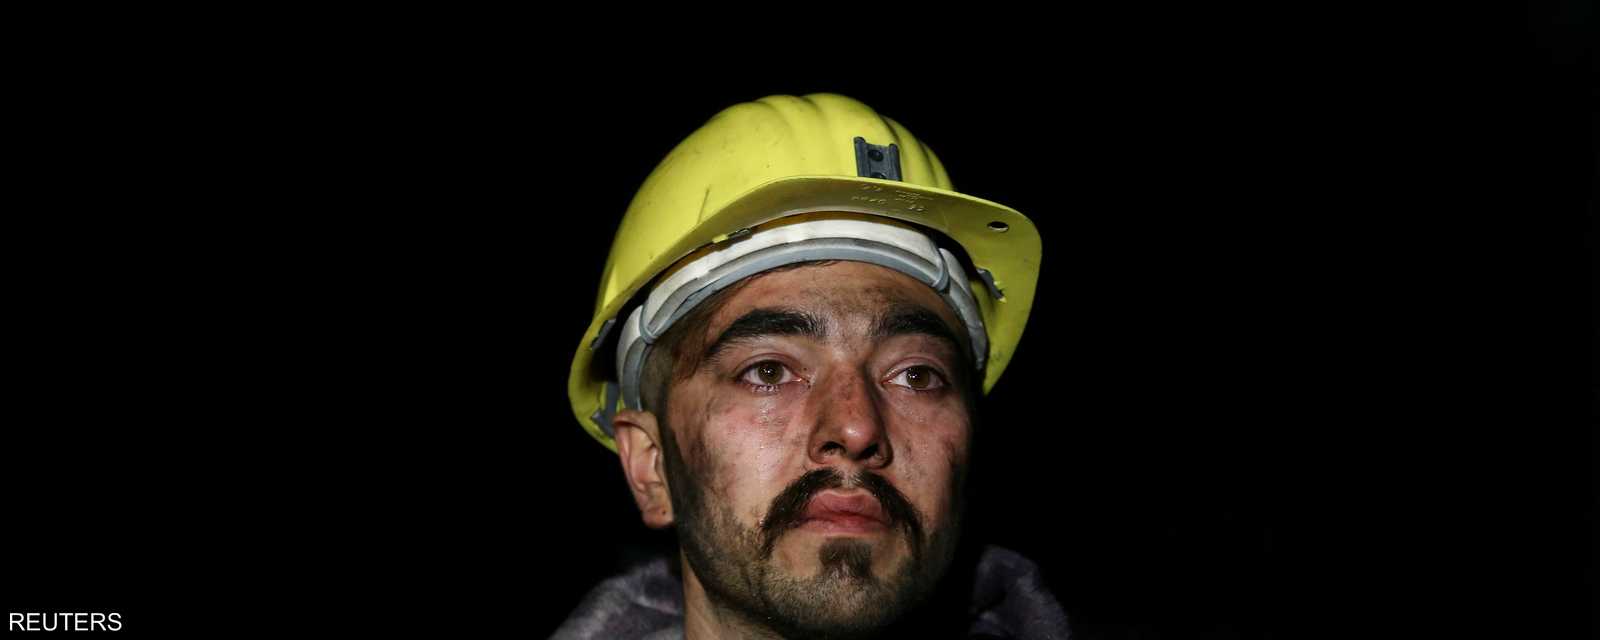 الوجوم على وجه أحد عمال المنجم بعد خروجه سالما